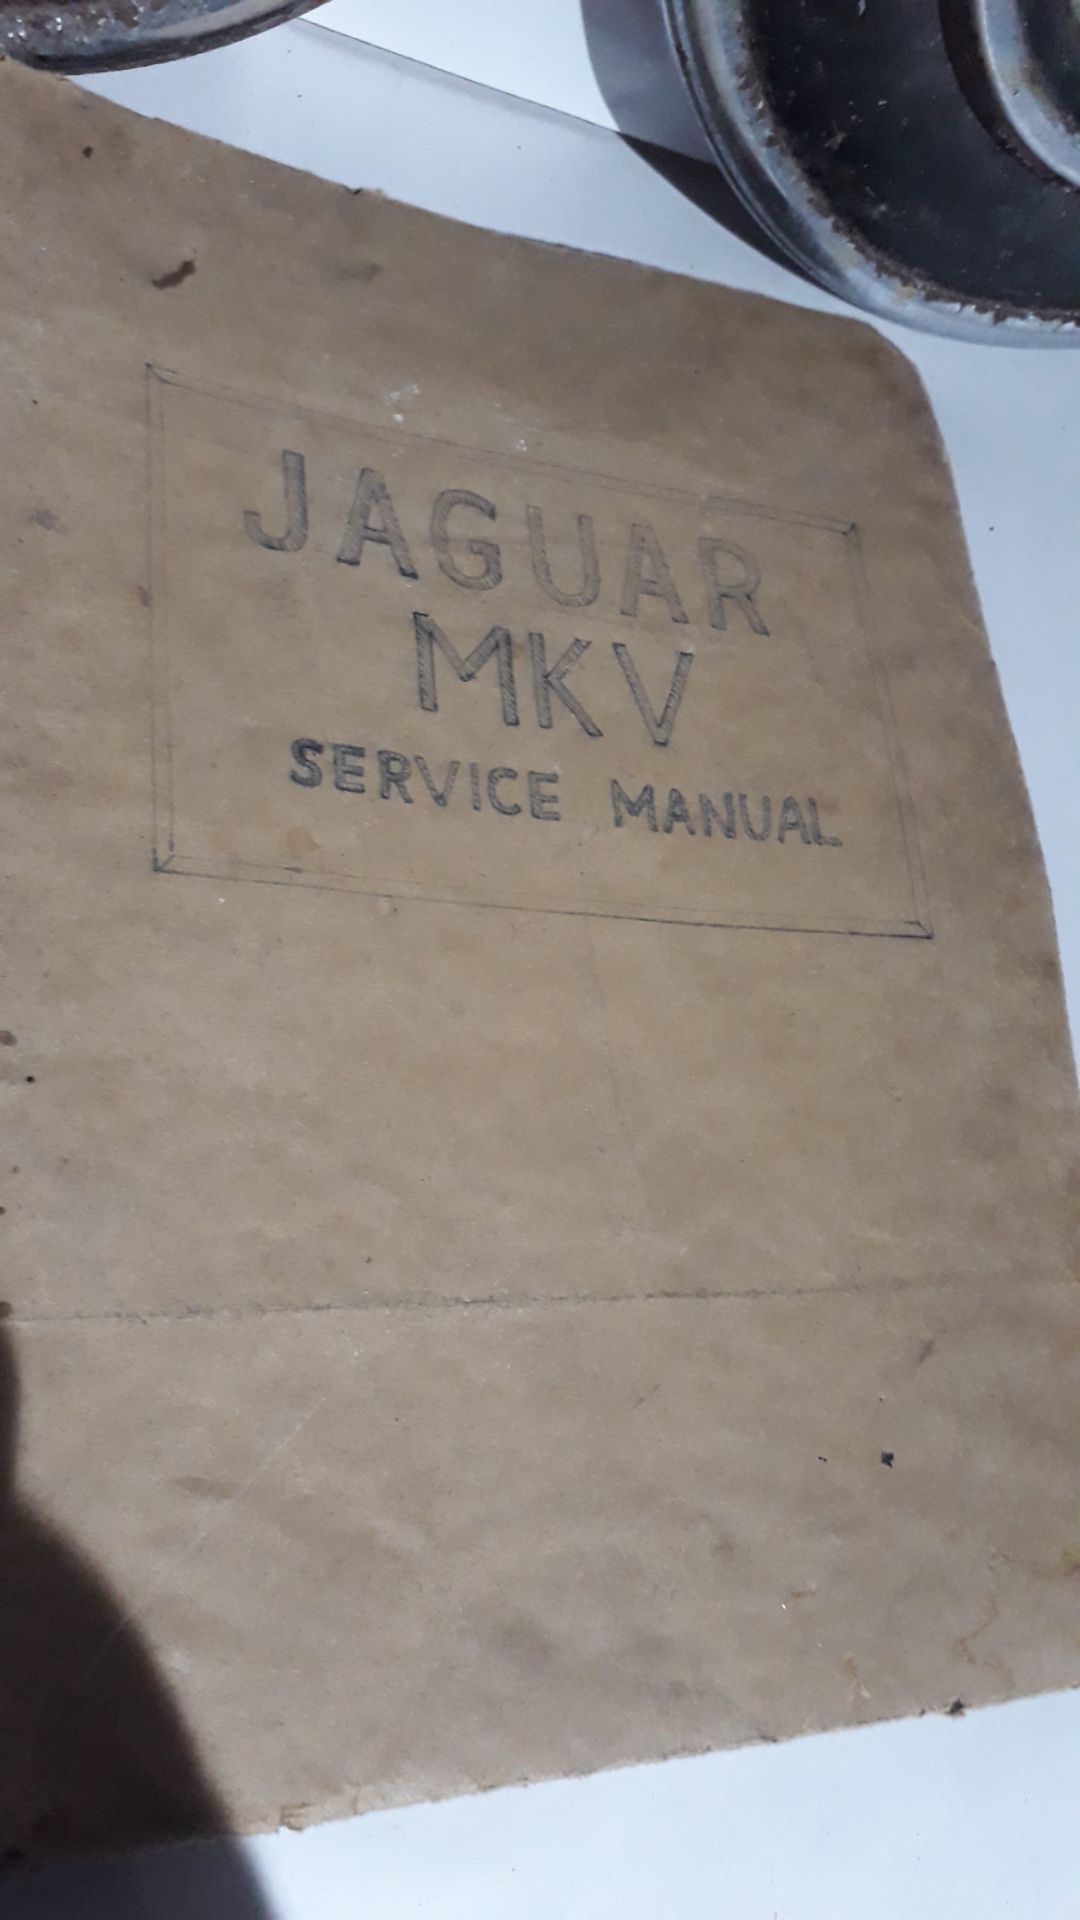 lot 44 jaguar mark 5 service manual with 2 vintage jag hubs - Image 2 of 2